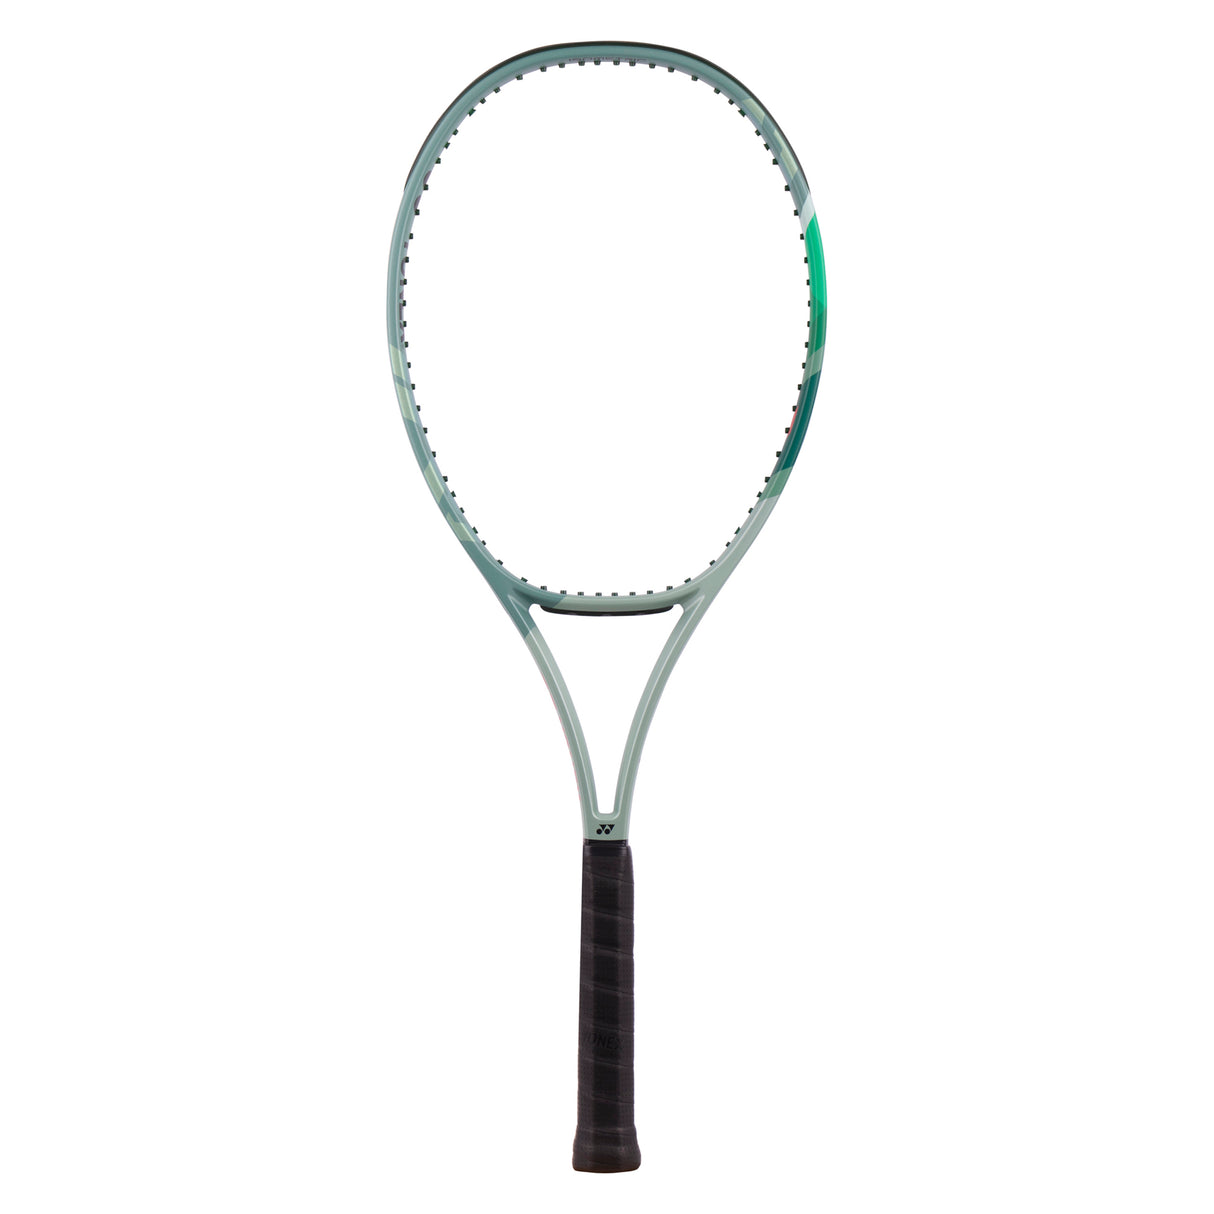 Yonex Percept 100 Tennis Racket (Unstrung)